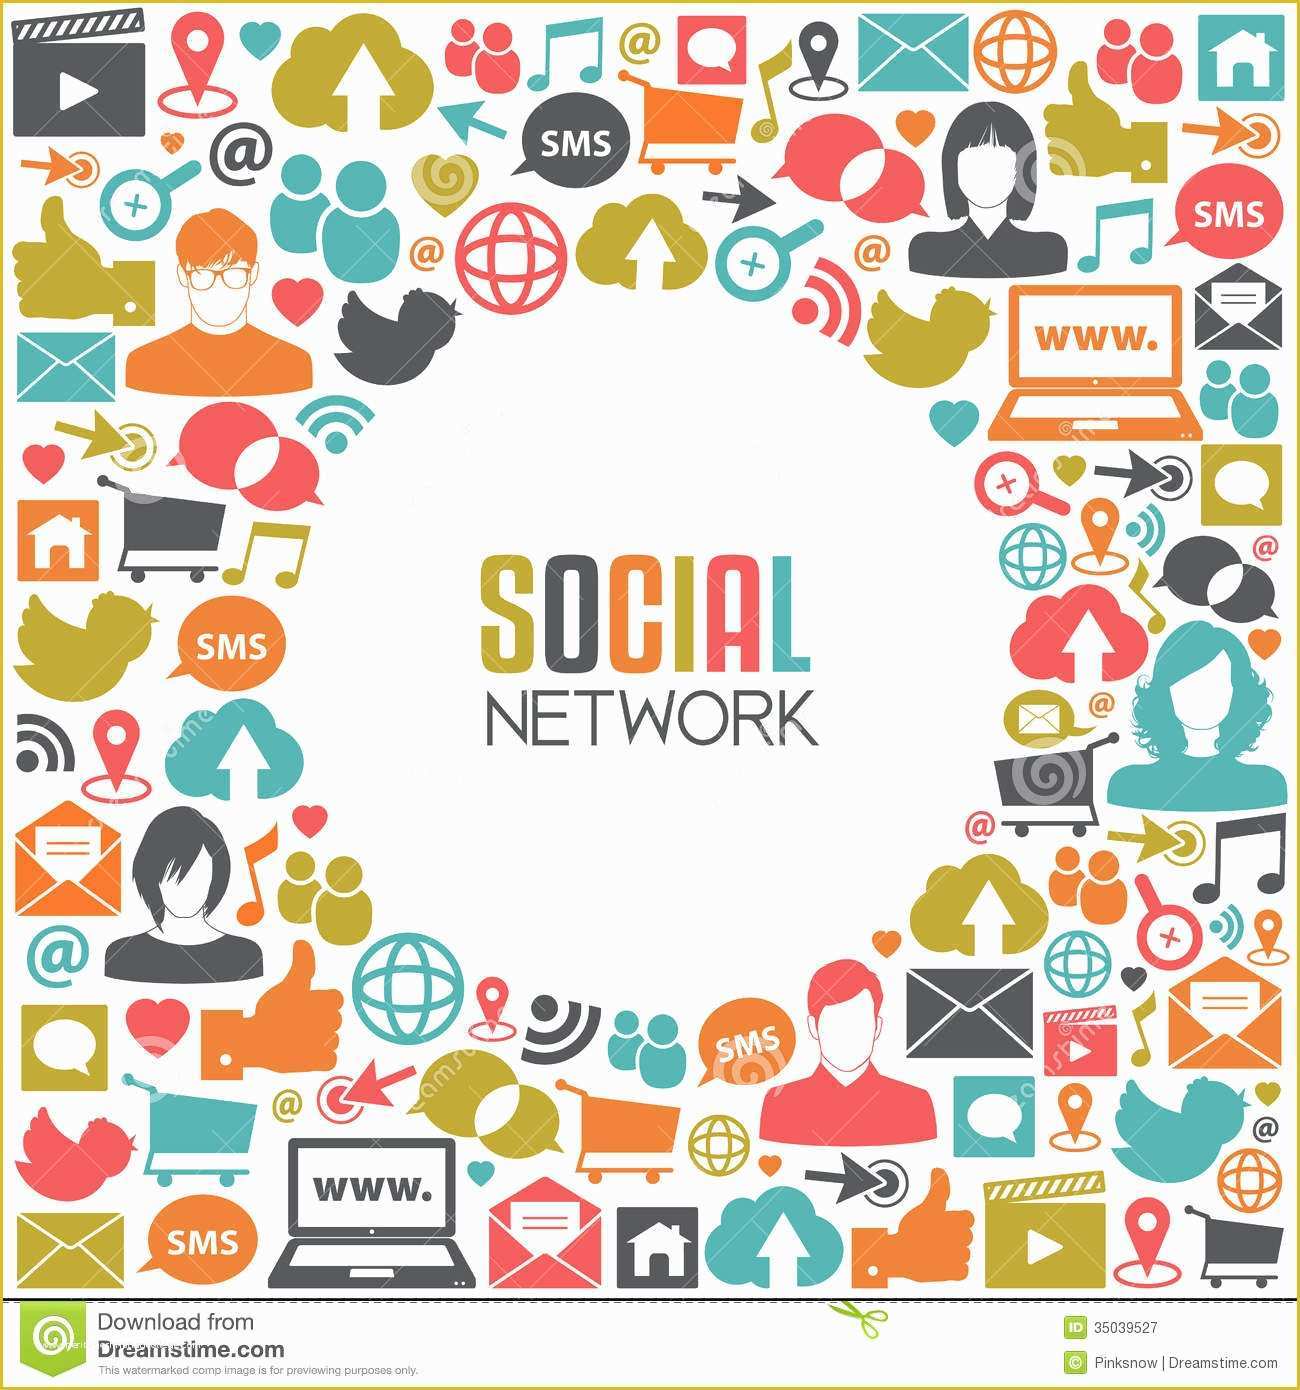 Social Media Design Templates Free Of social Media Stock Vector Illustration Of Element Dialog